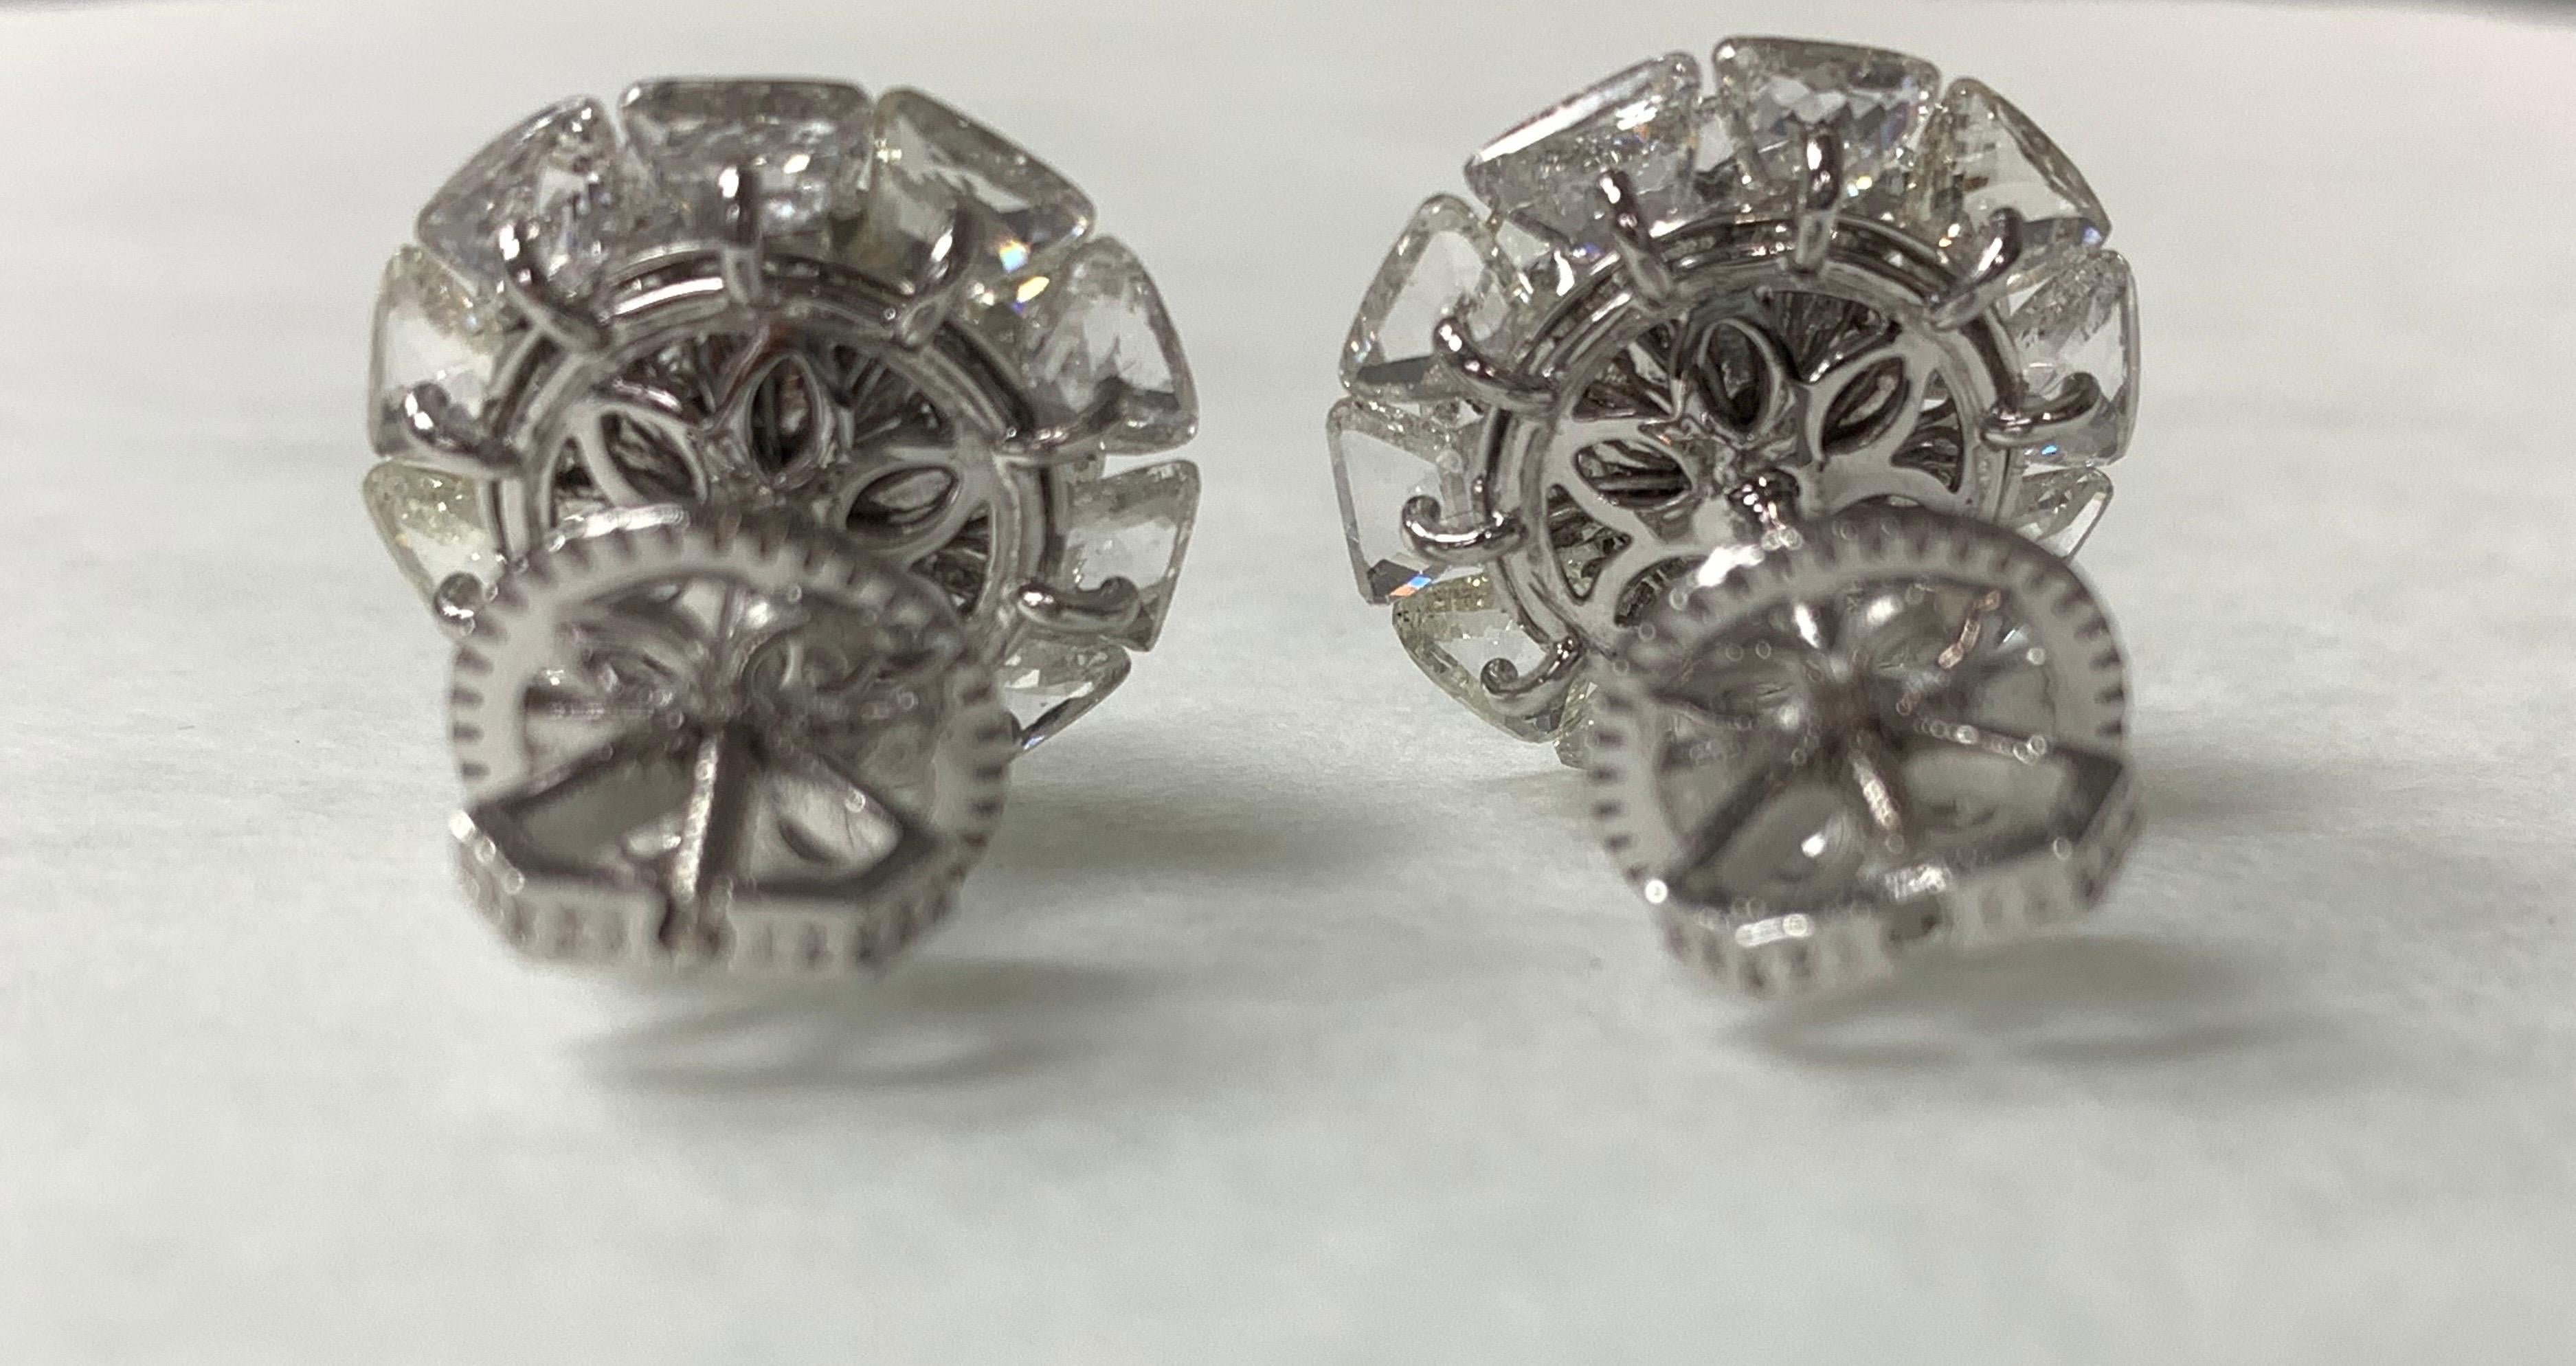 Contemporary Fancy Cut White Trillion Shape Diamond Stud Earrings in 18 Karat White Gold